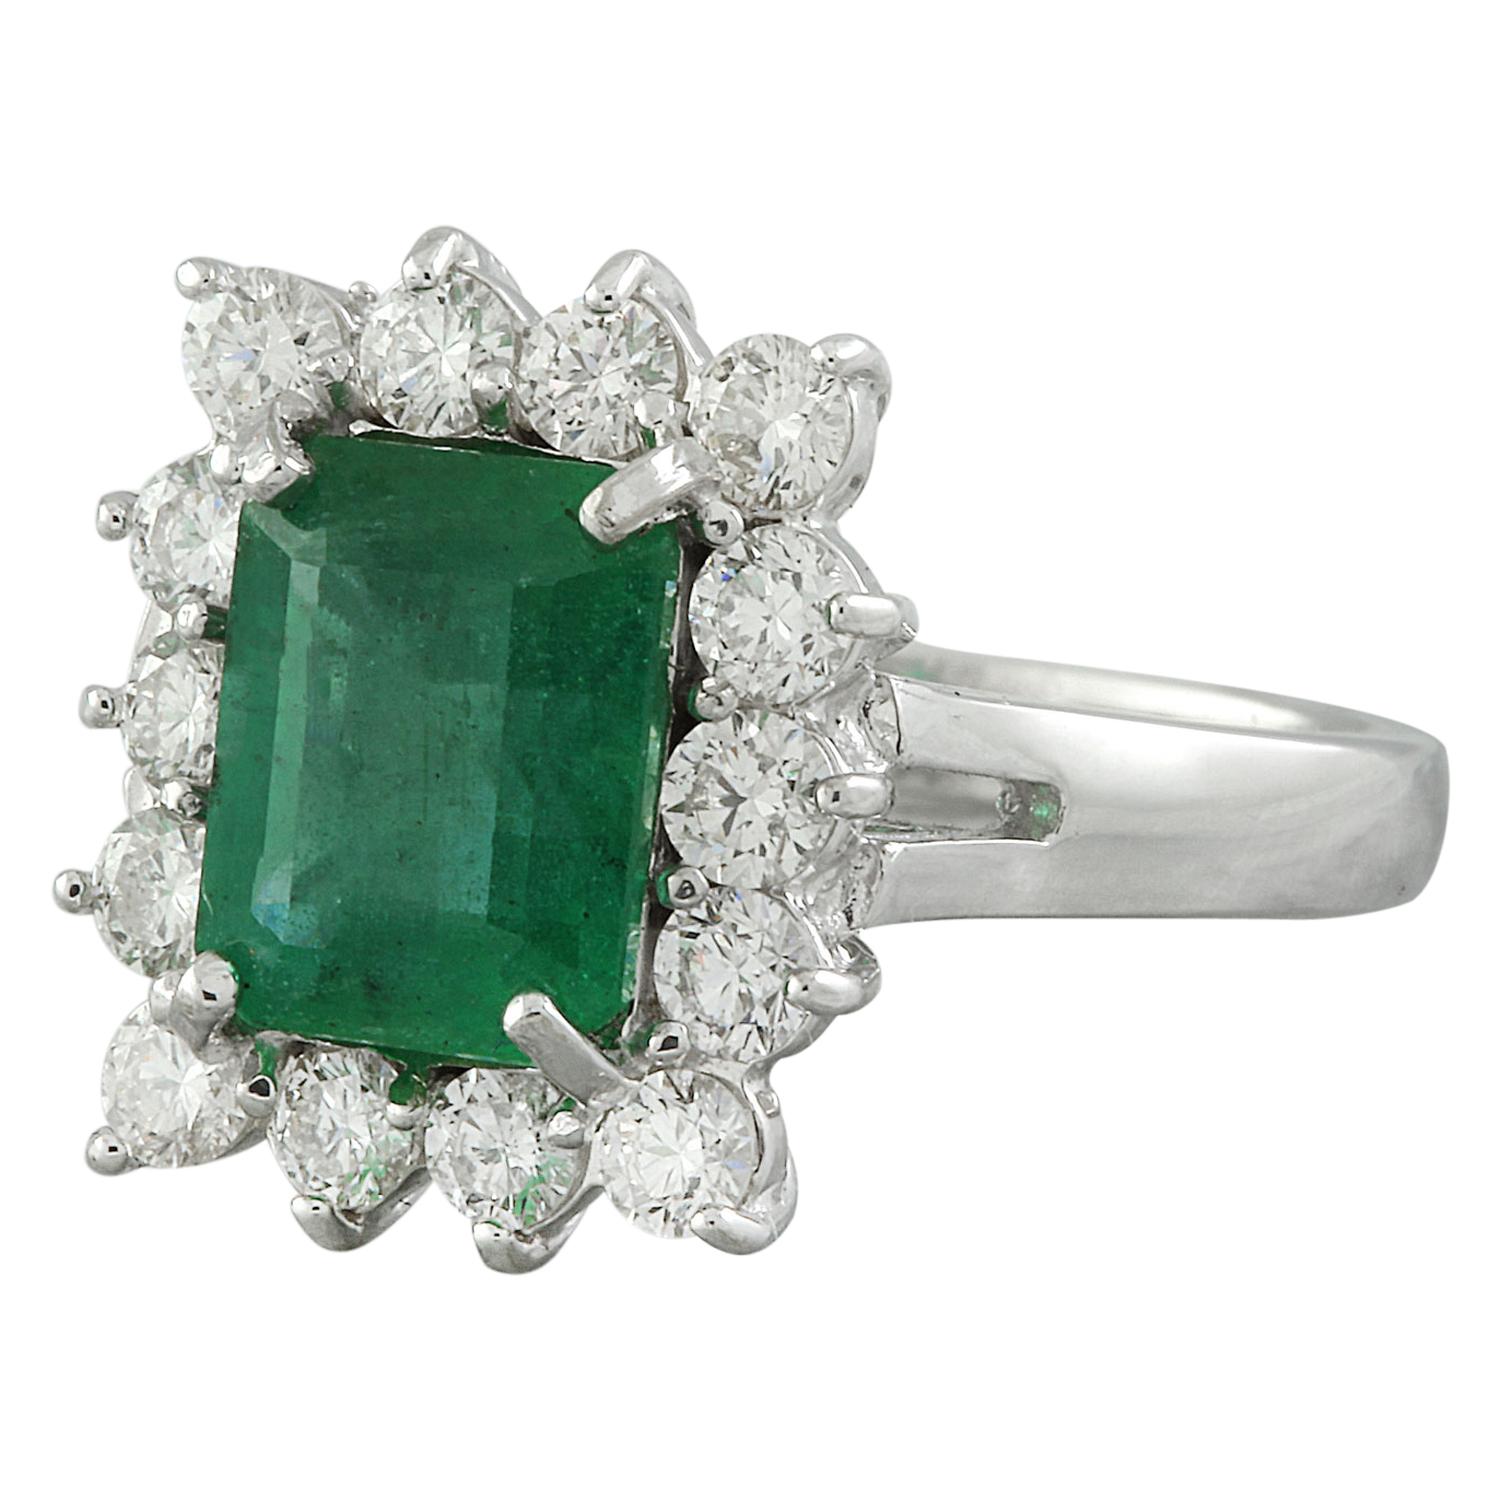 Erhöhen Sie Ihren Stil mit diesem exquisiten 4,95 Karat natürlichen Smaragd 14K Solid White Gold Diamond Ring. Der mit Präzision gefertigte und mit 14 Karat gestempelte Ring hat ein Gesamtgewicht von 6,3 Gramm. Der bezaubernde Smaragd mit einem